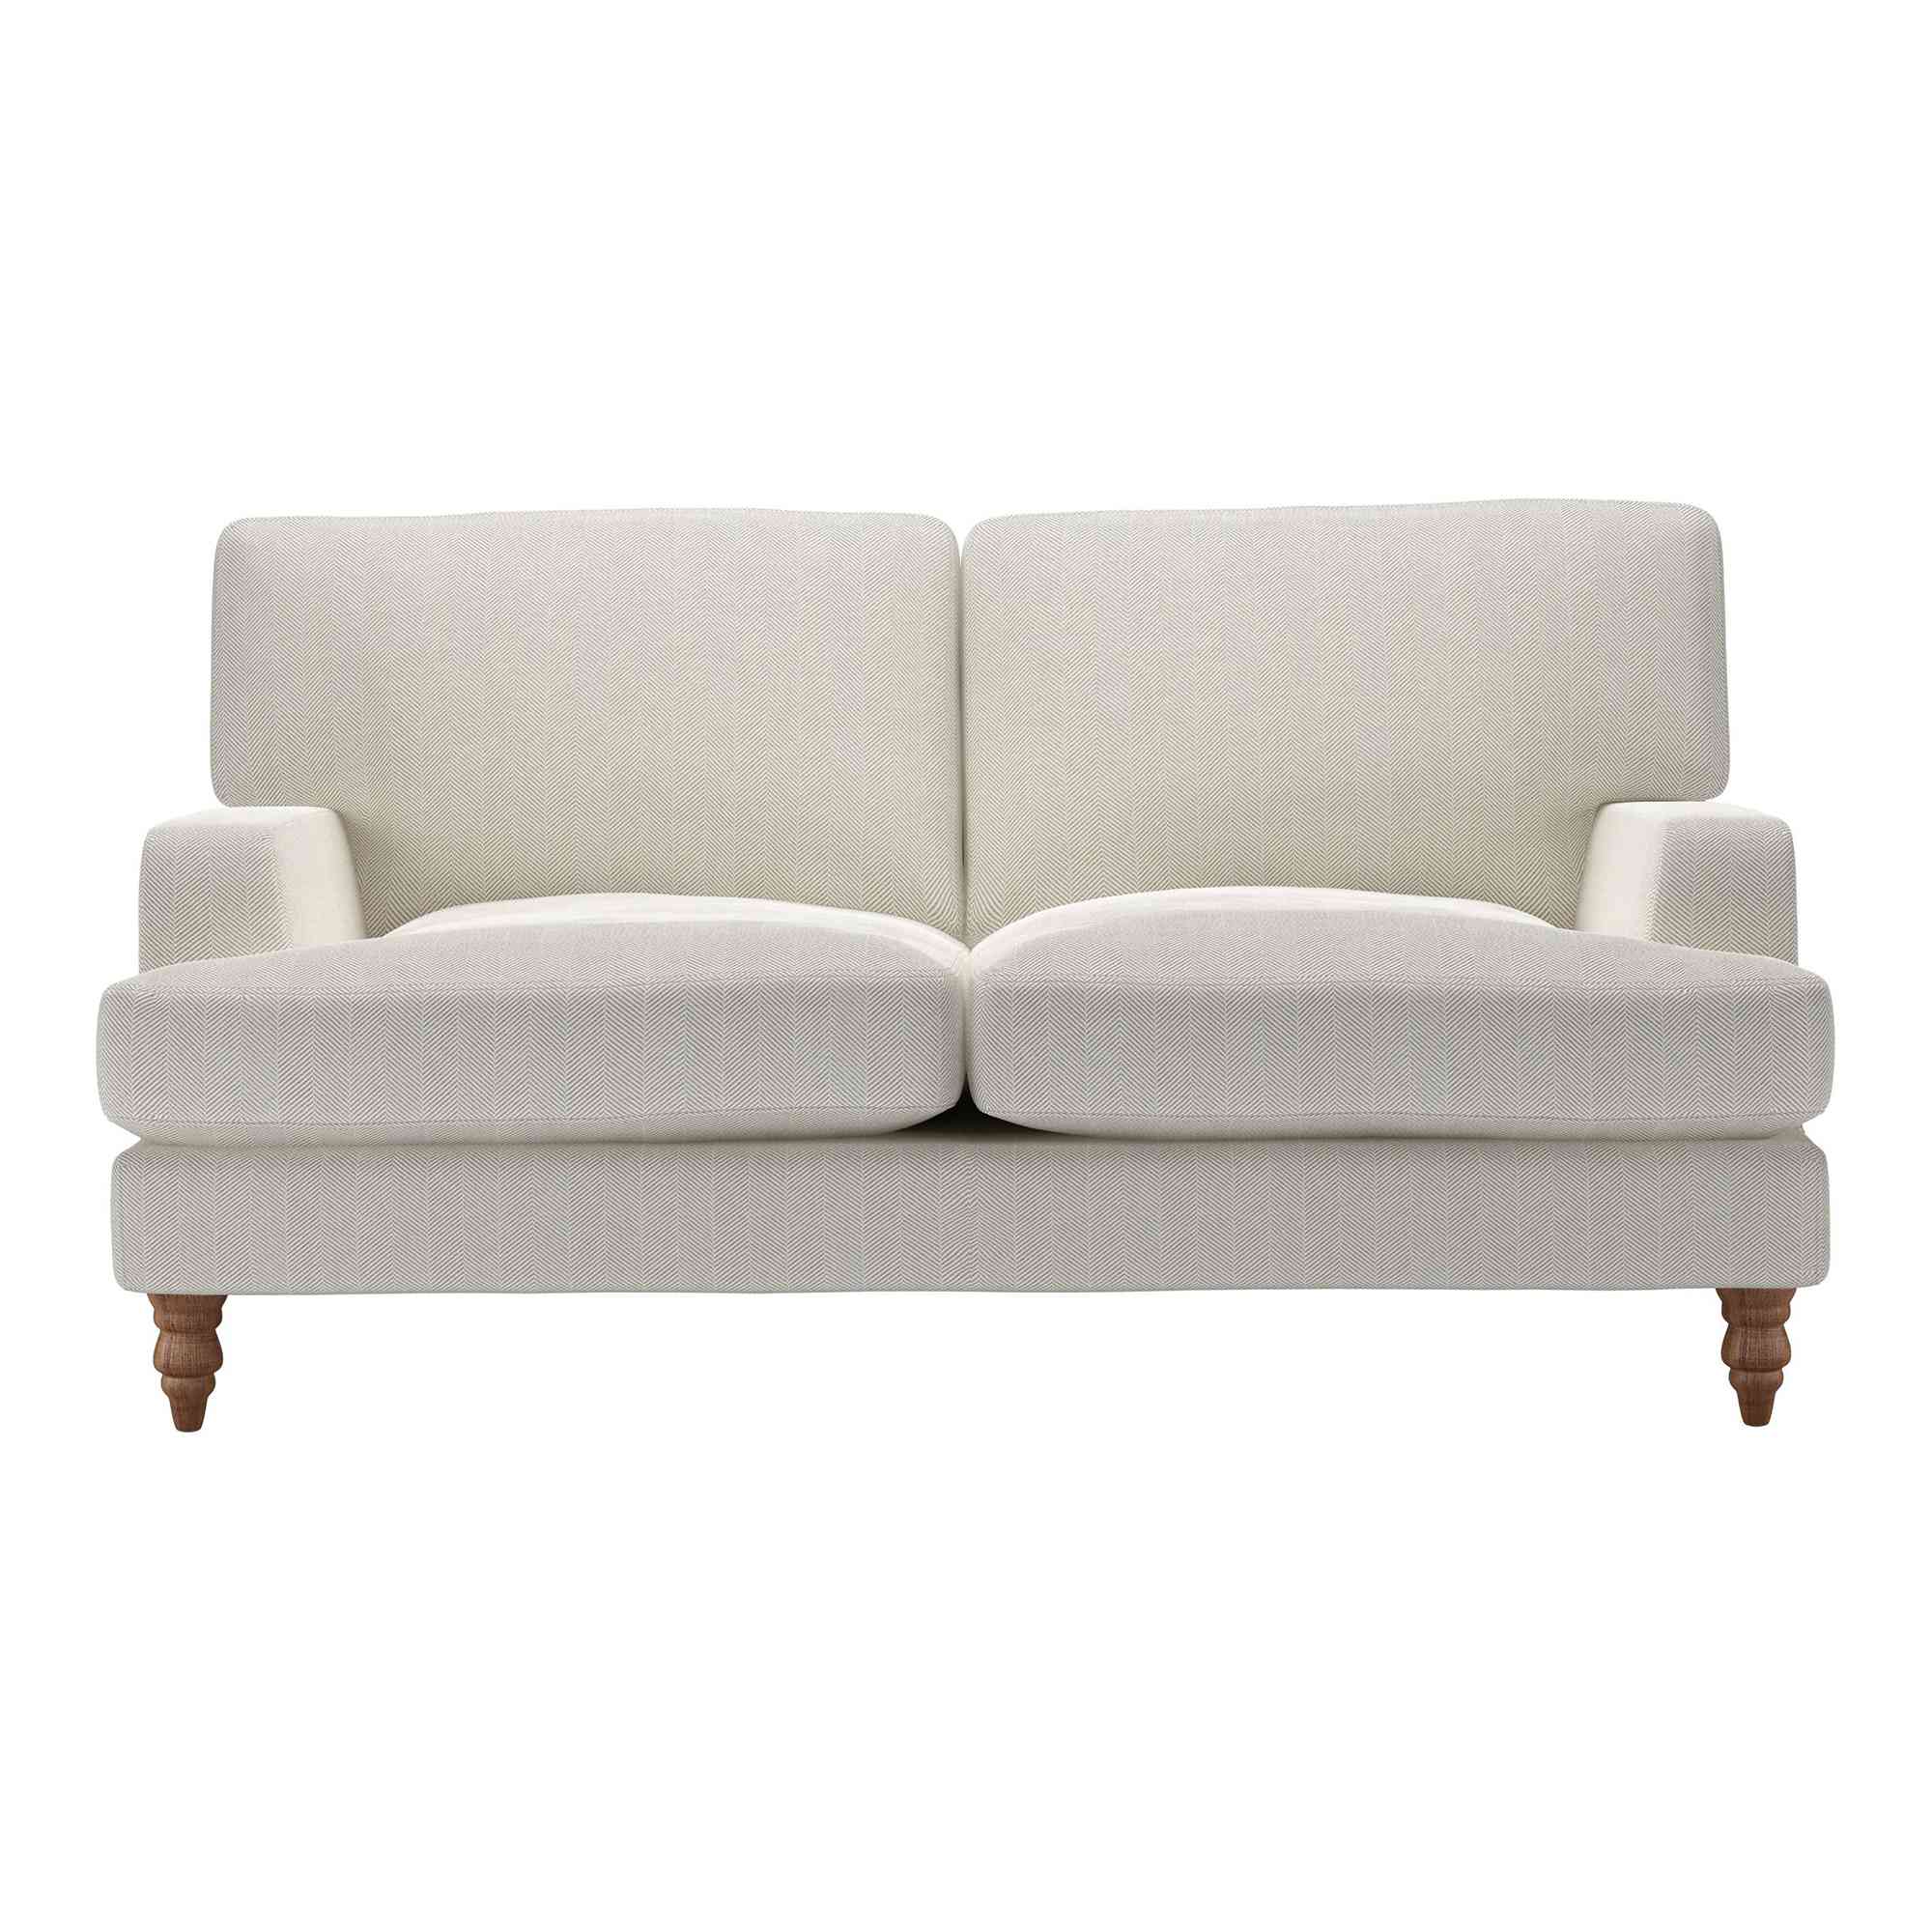 Isla Clay House Herringbone Weave Sofa - 2 Seater